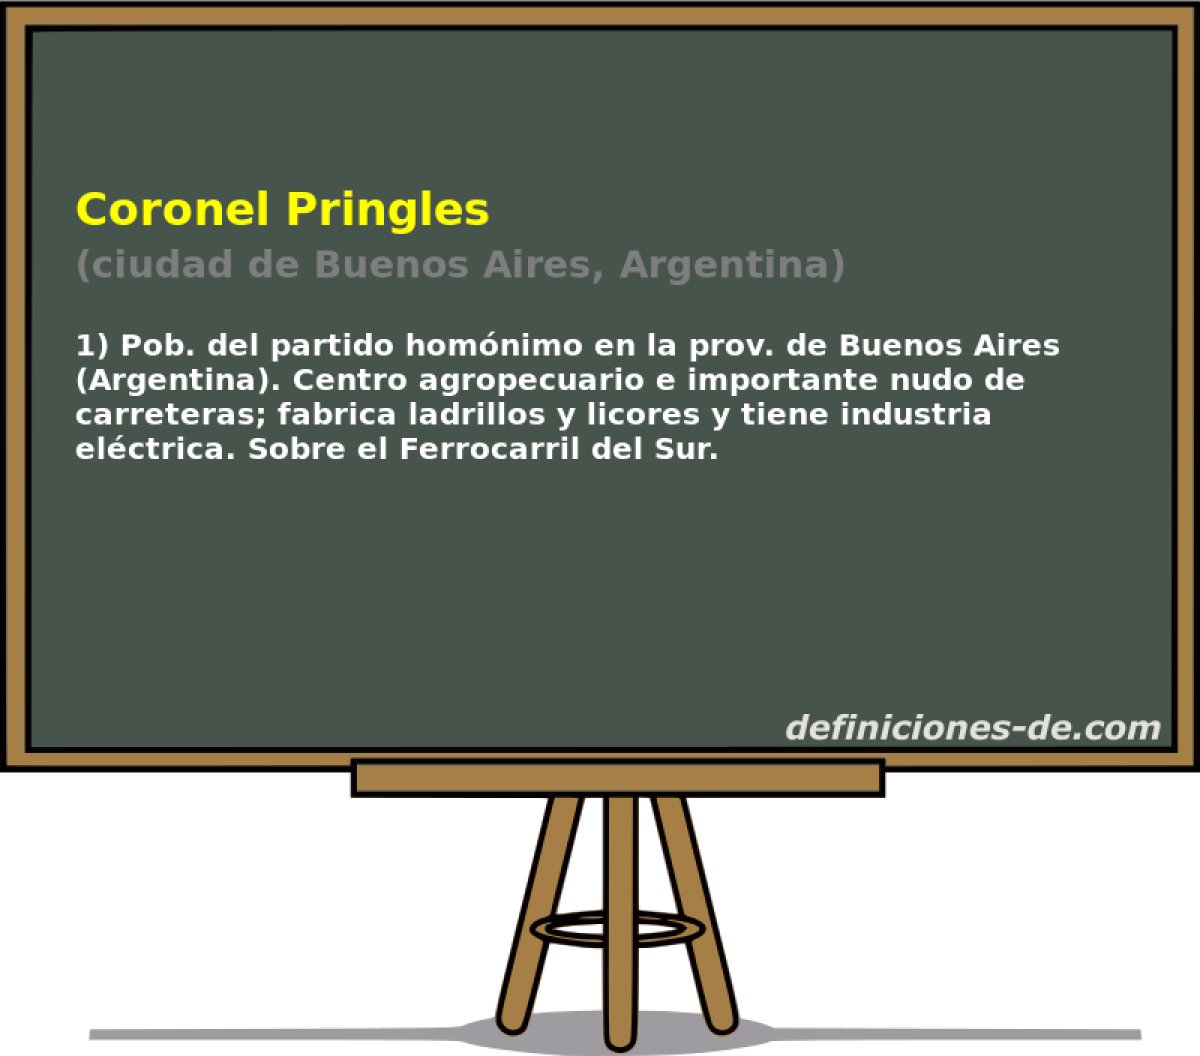 Coronel Pringles (ciudad de Buenos Aires, Argentina)